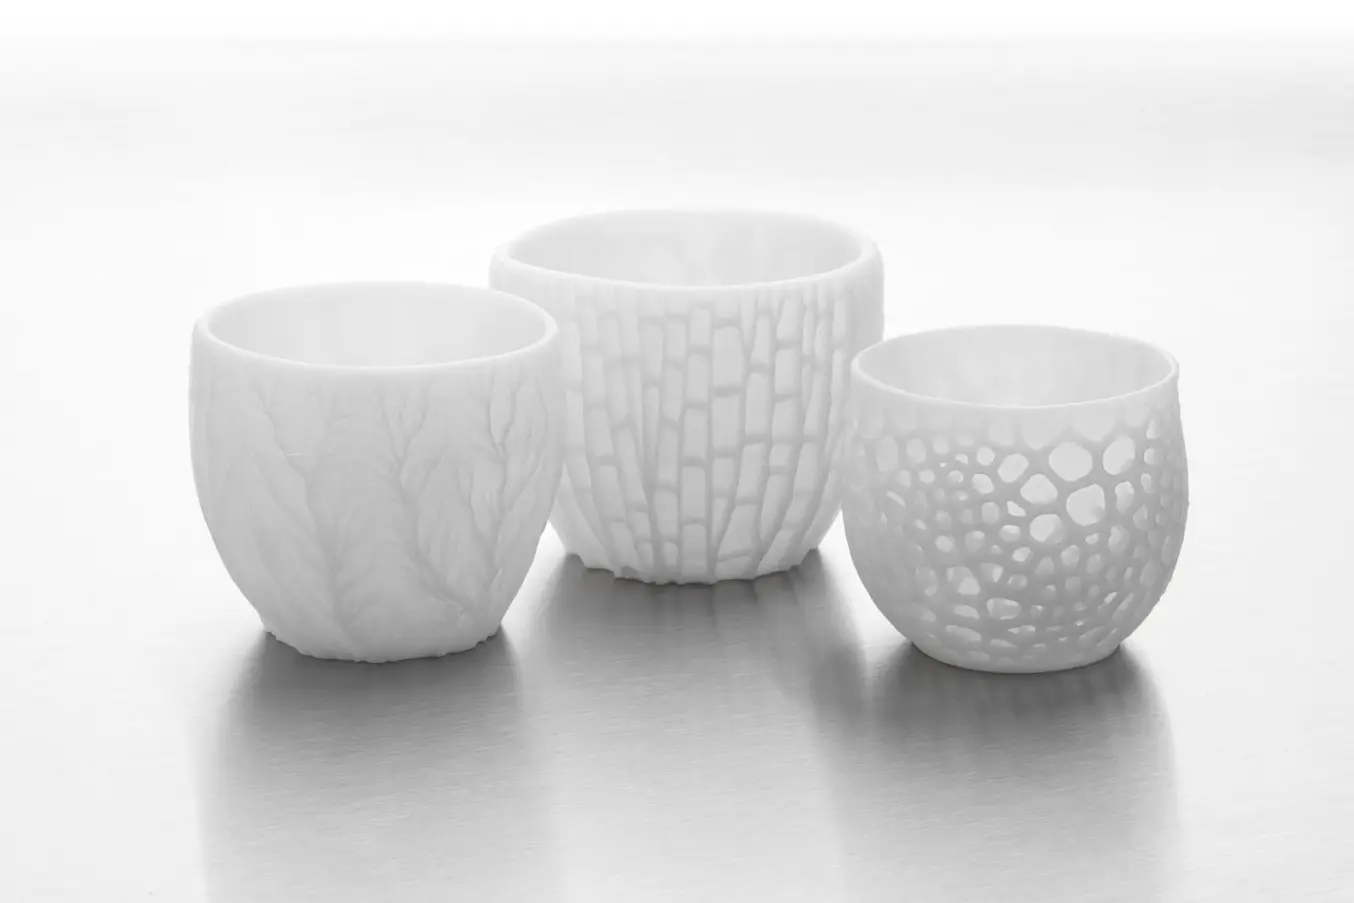 L'impression 3D en matériaux céramiques est idéale pour fabriquer des objets aux formes géométriques compliquées, impossibles à réaliser à la main.